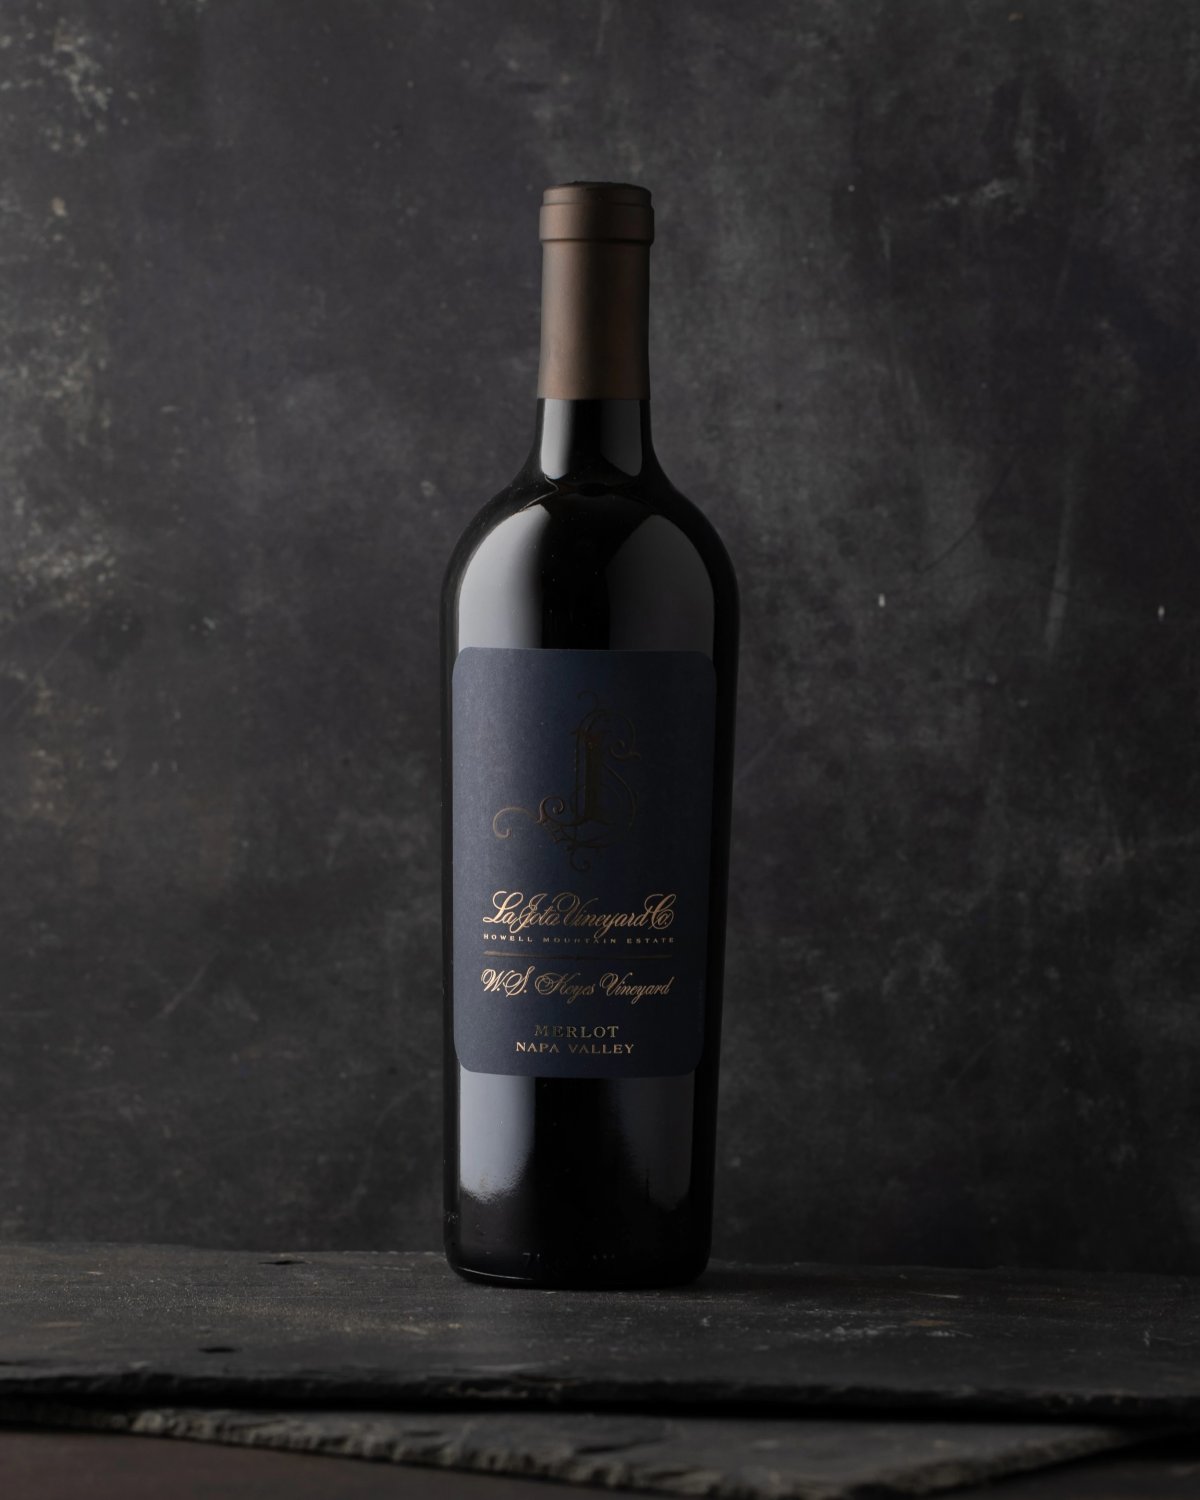 Single bottle of 2018 La Jota W.S. Keyes Vineyard Merlot